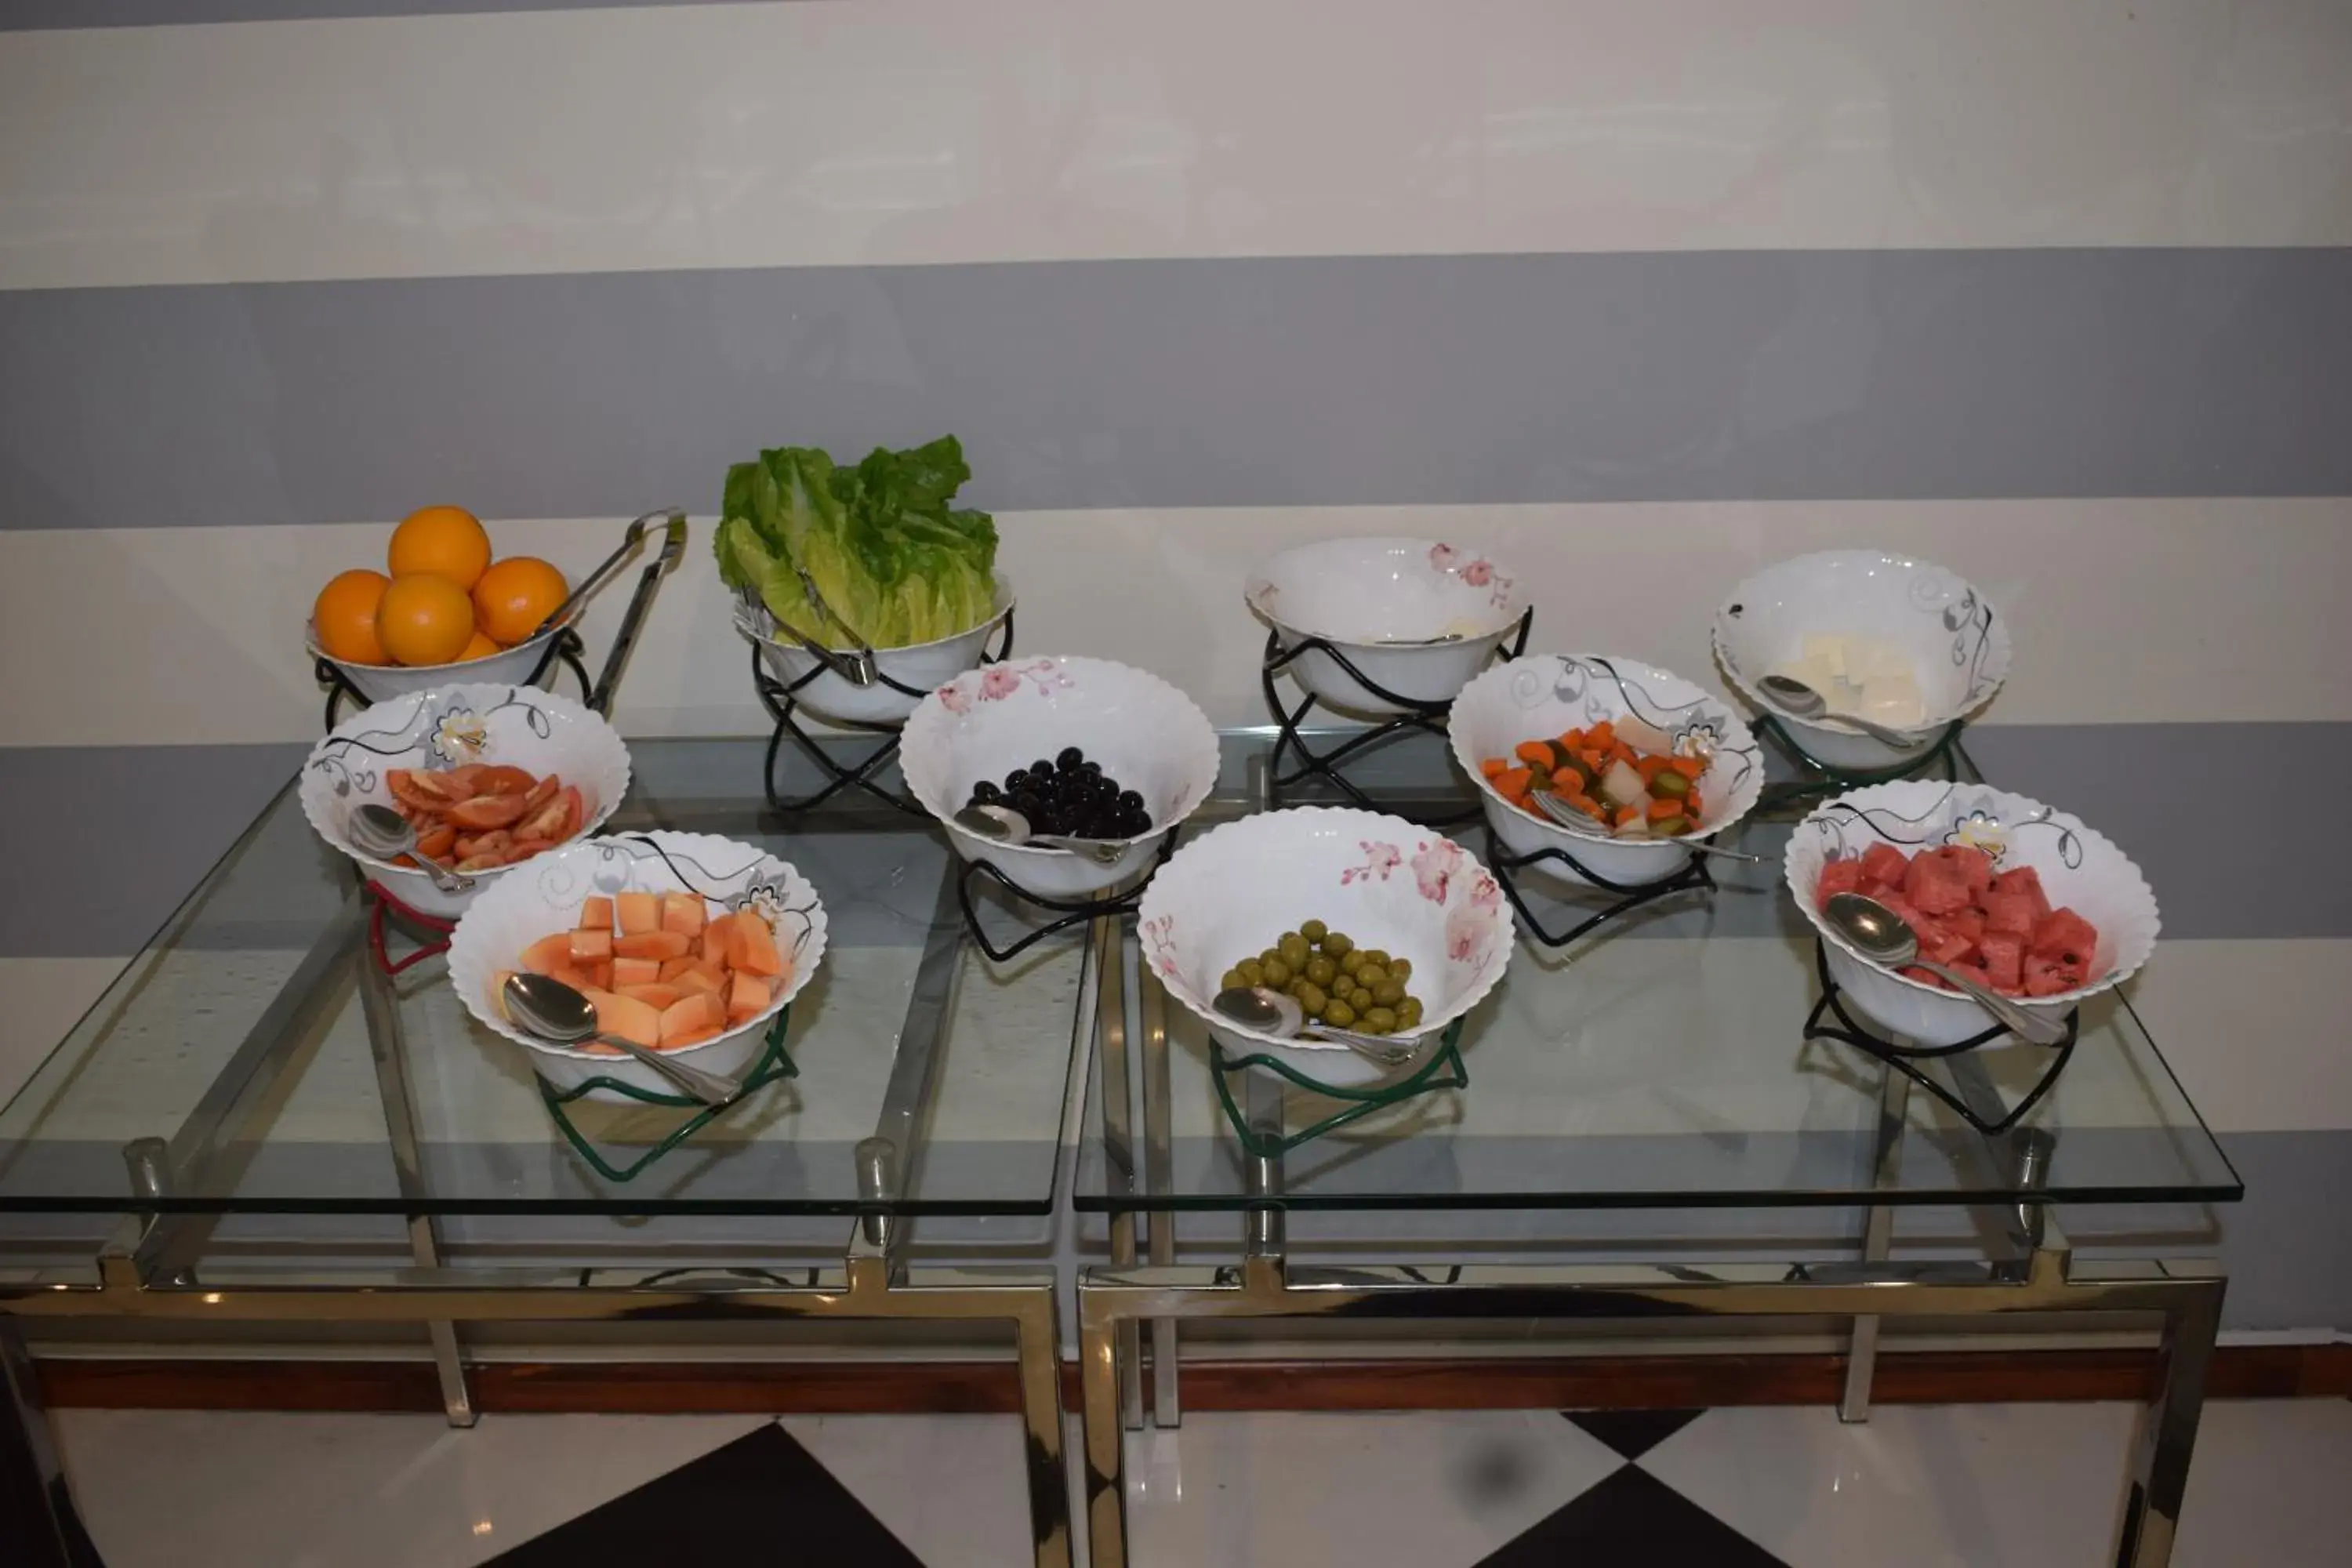 Buffet breakfast in Aldar Hotel